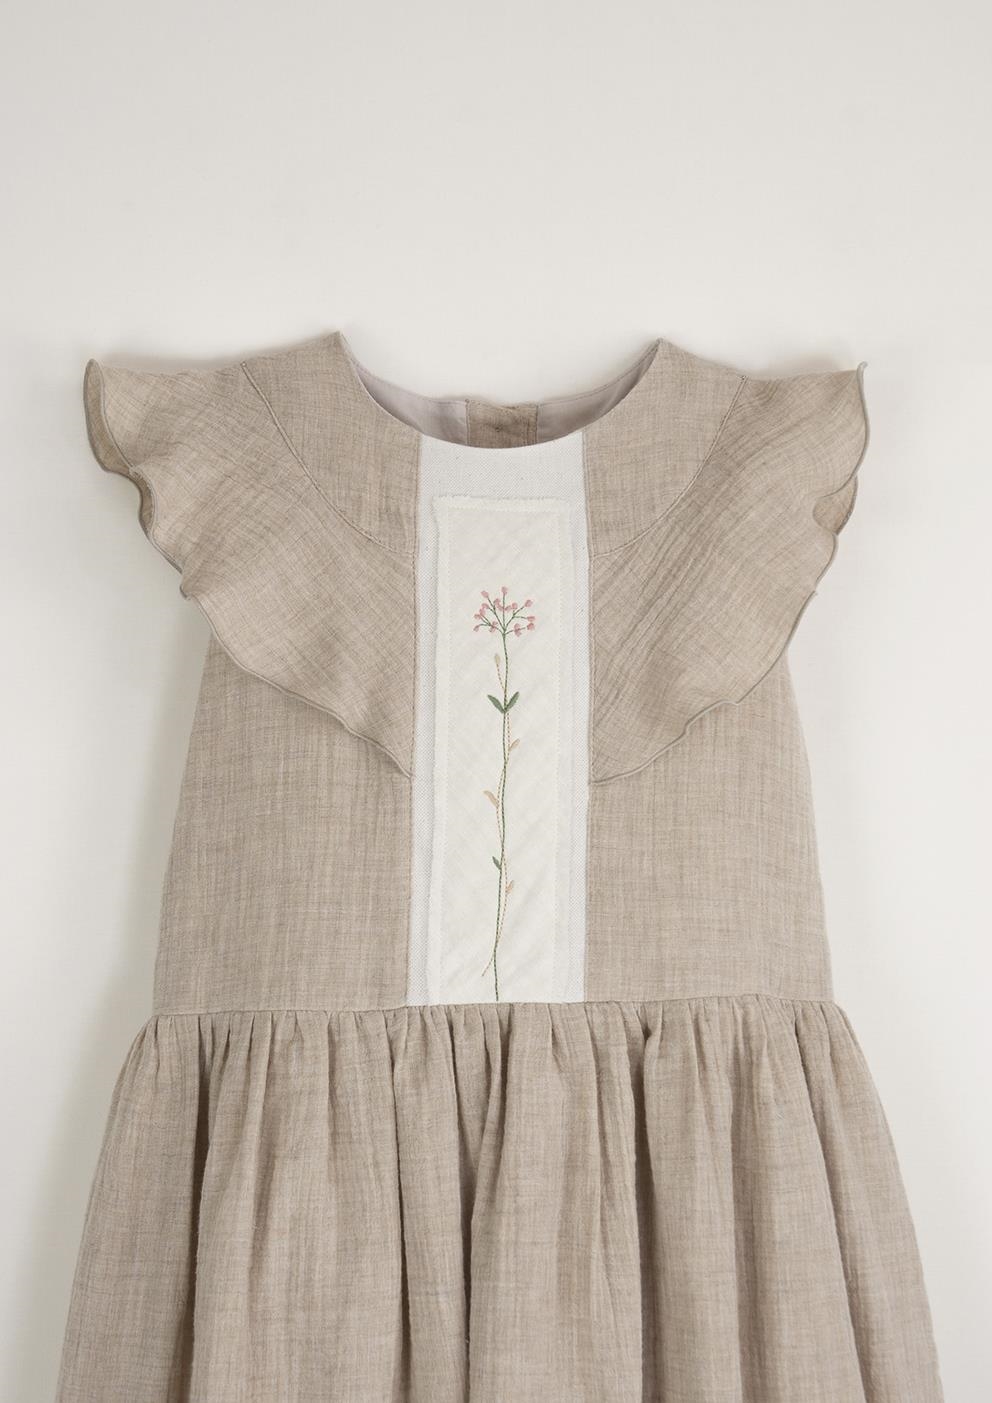 Mod.31.2 Sand organic dress with yoke and frill | SS23 Mod.31.2 Sand organic dress with yoke and frill